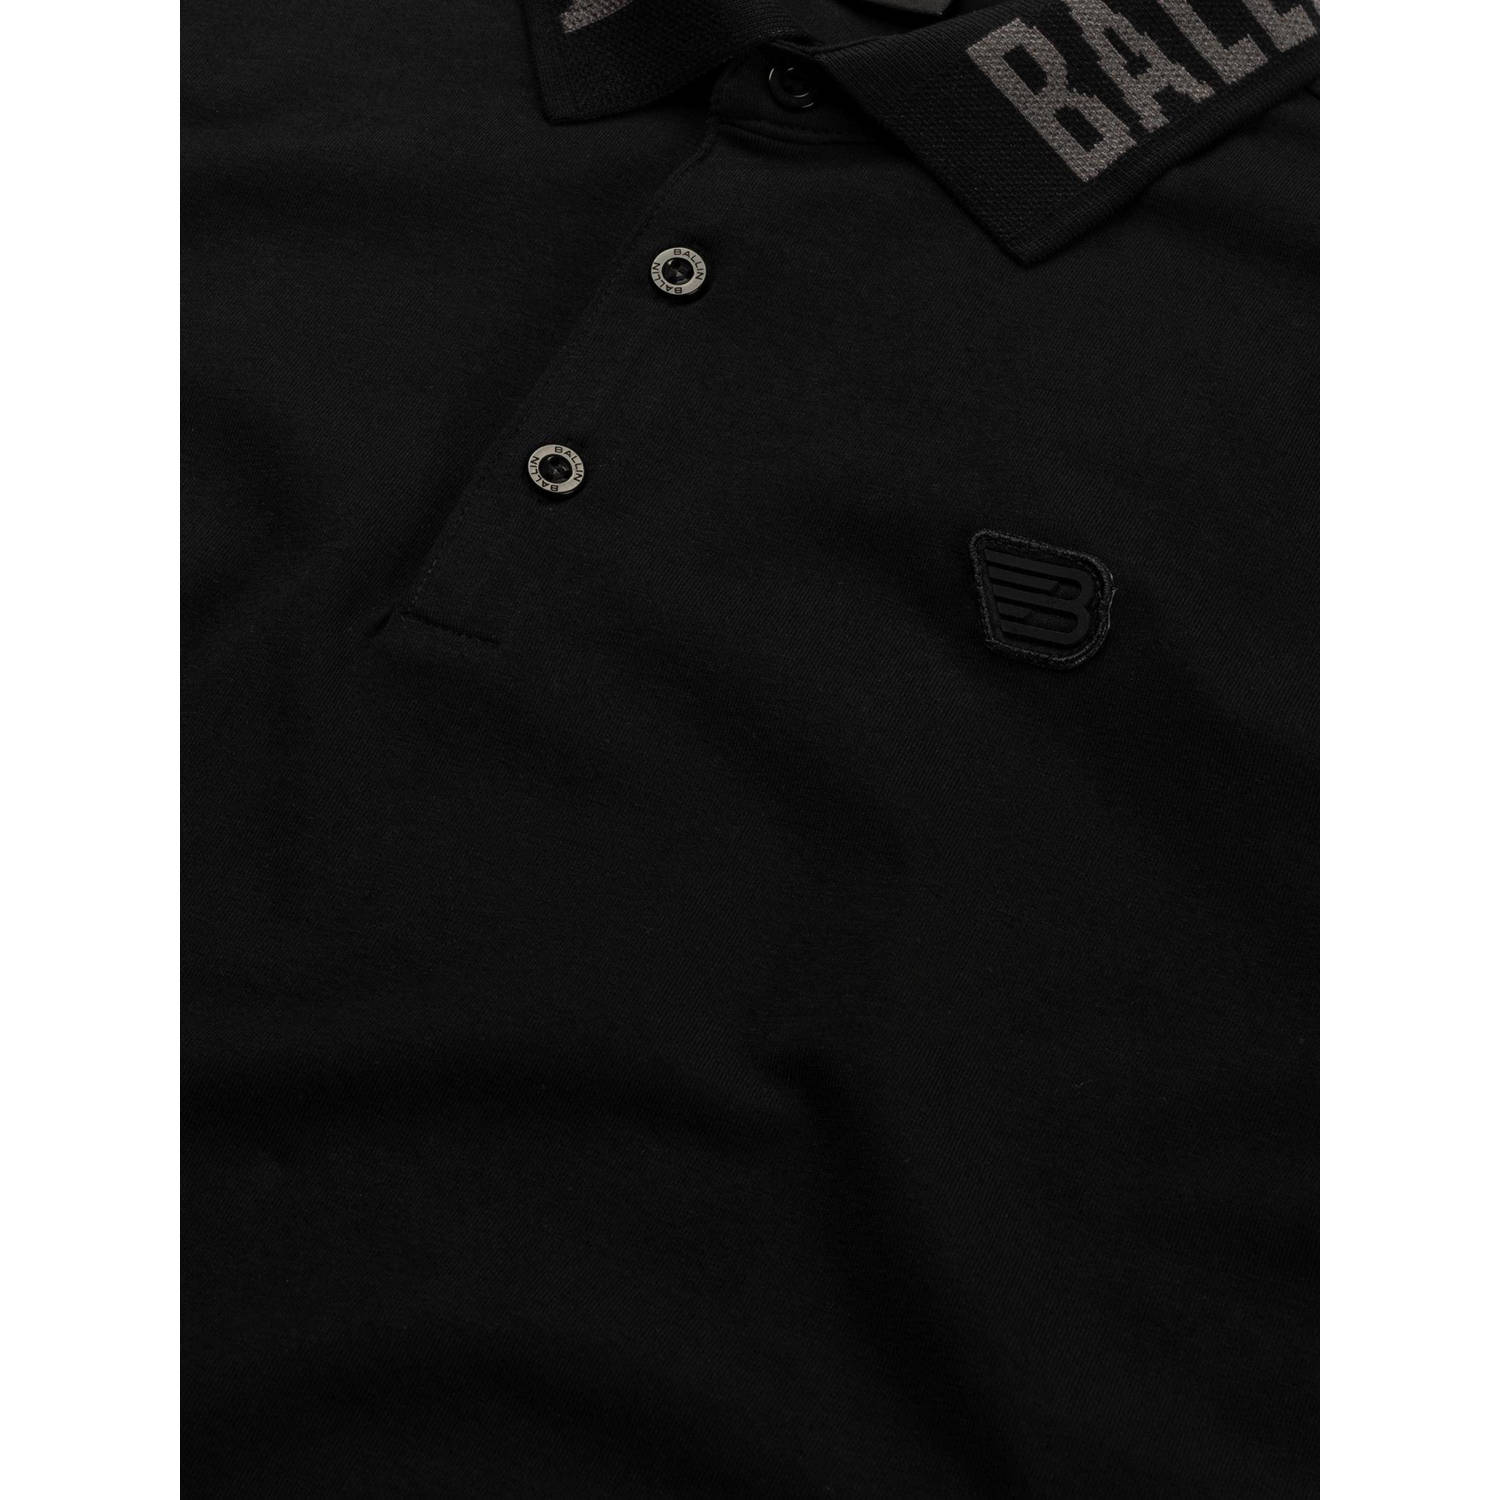 Ballin polo met logo zwart